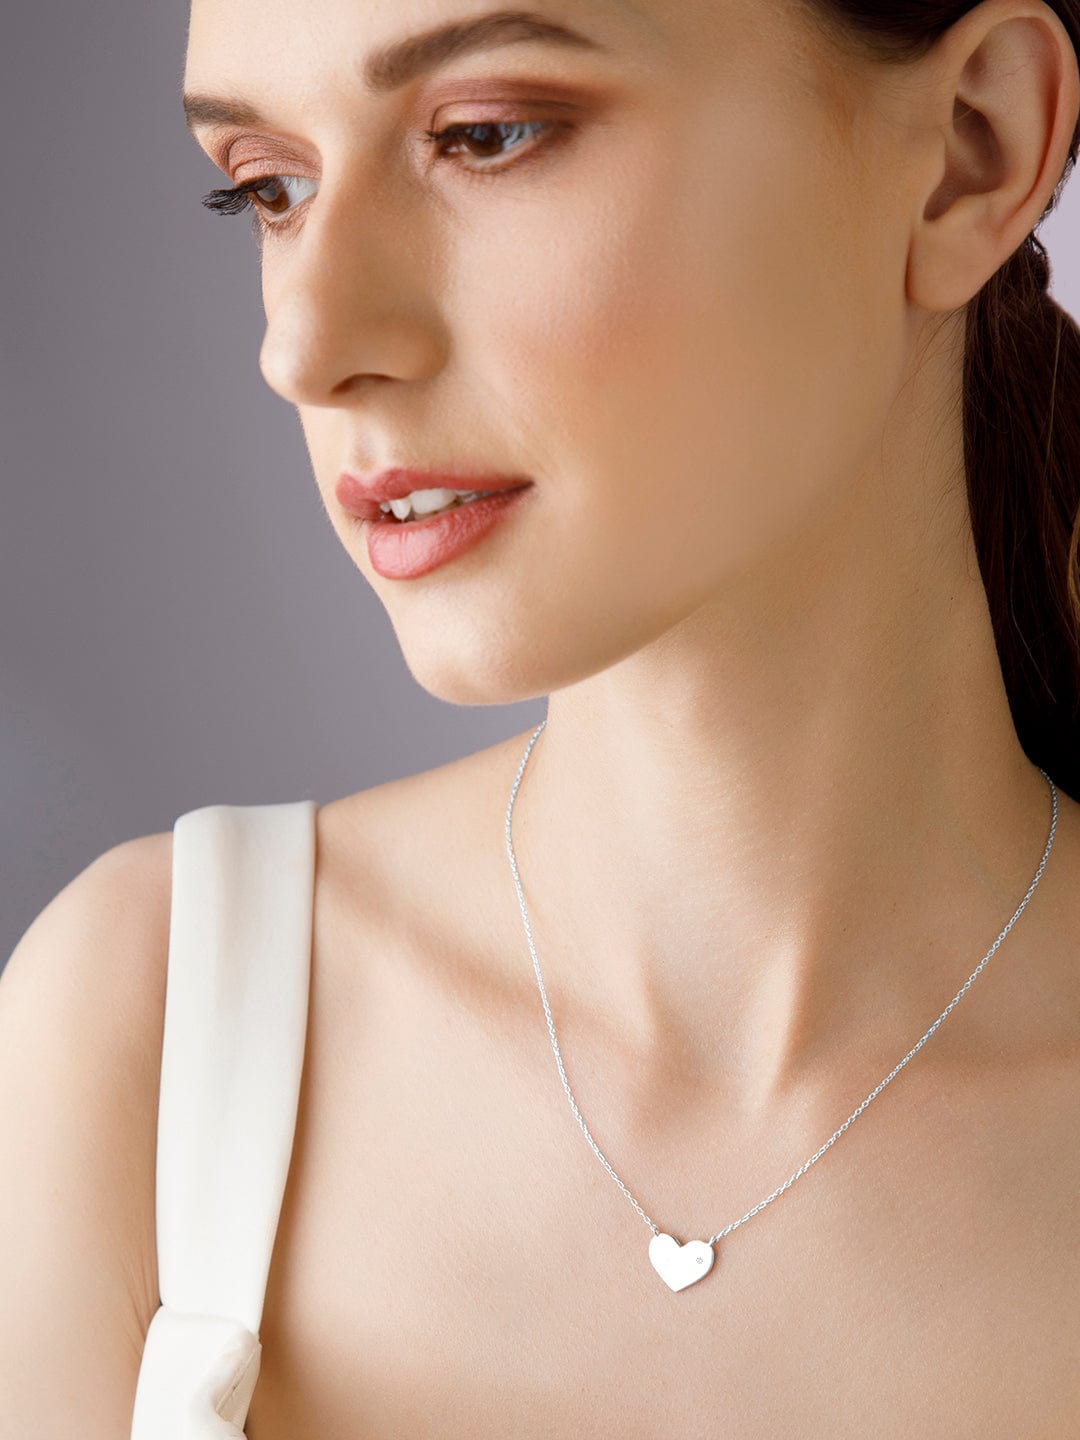 Buy 925 Sterling Silver Lifeline Pulse Heartbeat Charm Open Heart Pendant  Necklace, 22